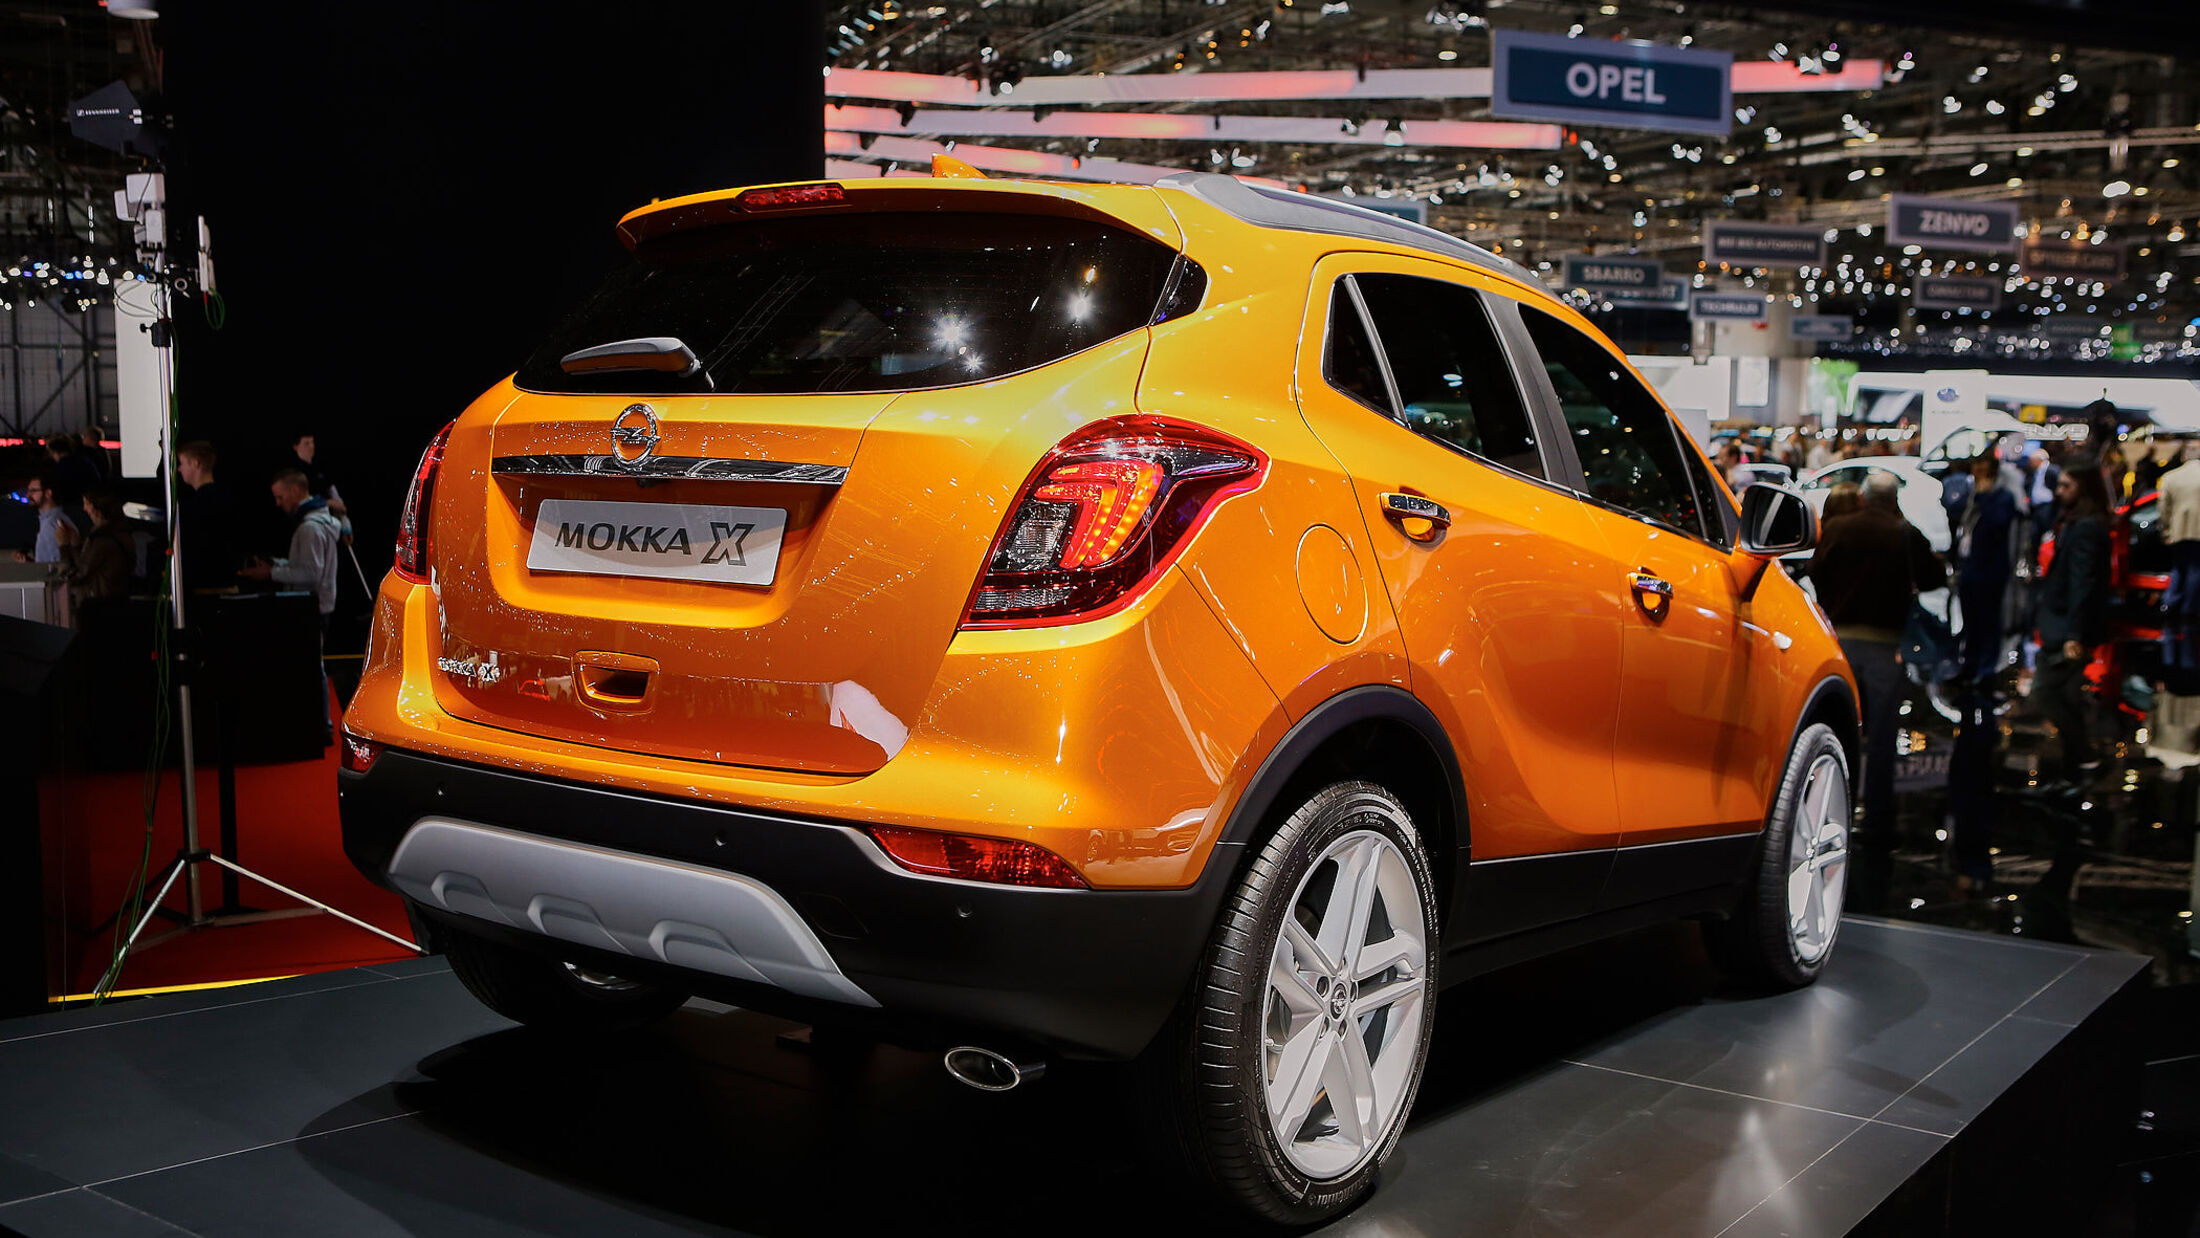 Opel Mokka X Weltpremiere: Neuer Look für Opels Kompakt-SUV